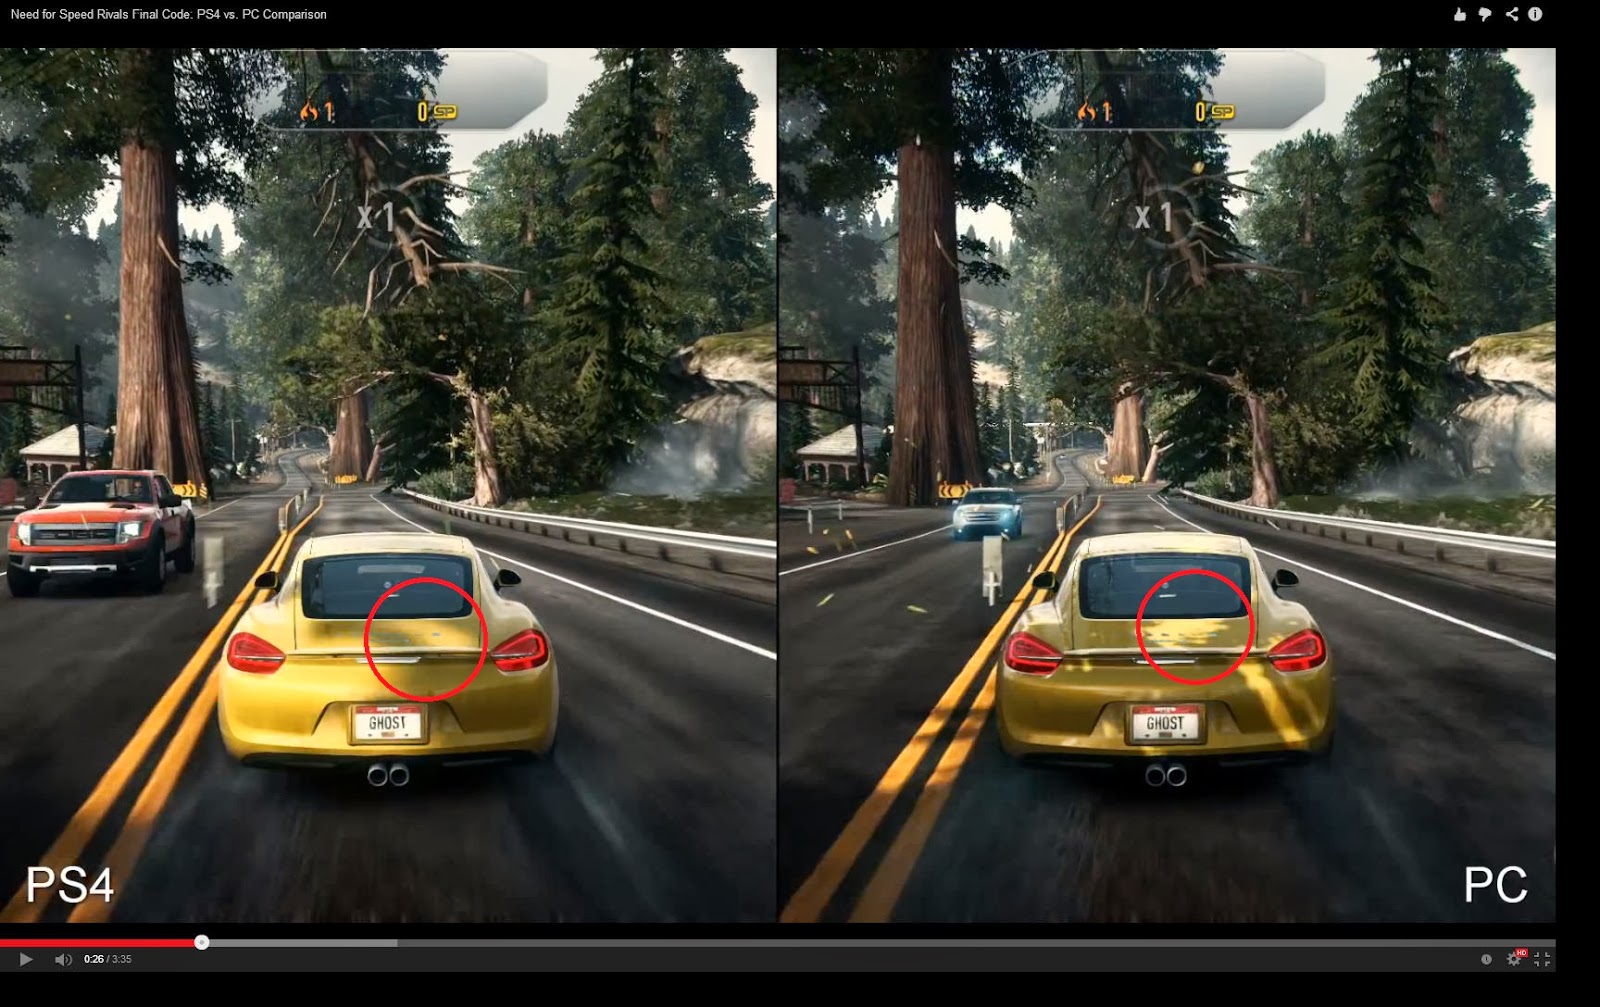 Лучшие игры на двоих xbox. Нфс ривалс хбокс 360. Need for Speed Rivals Xbox 360. Need for Speed Rivals PLAYSTATION 4. Нфс на пс3.